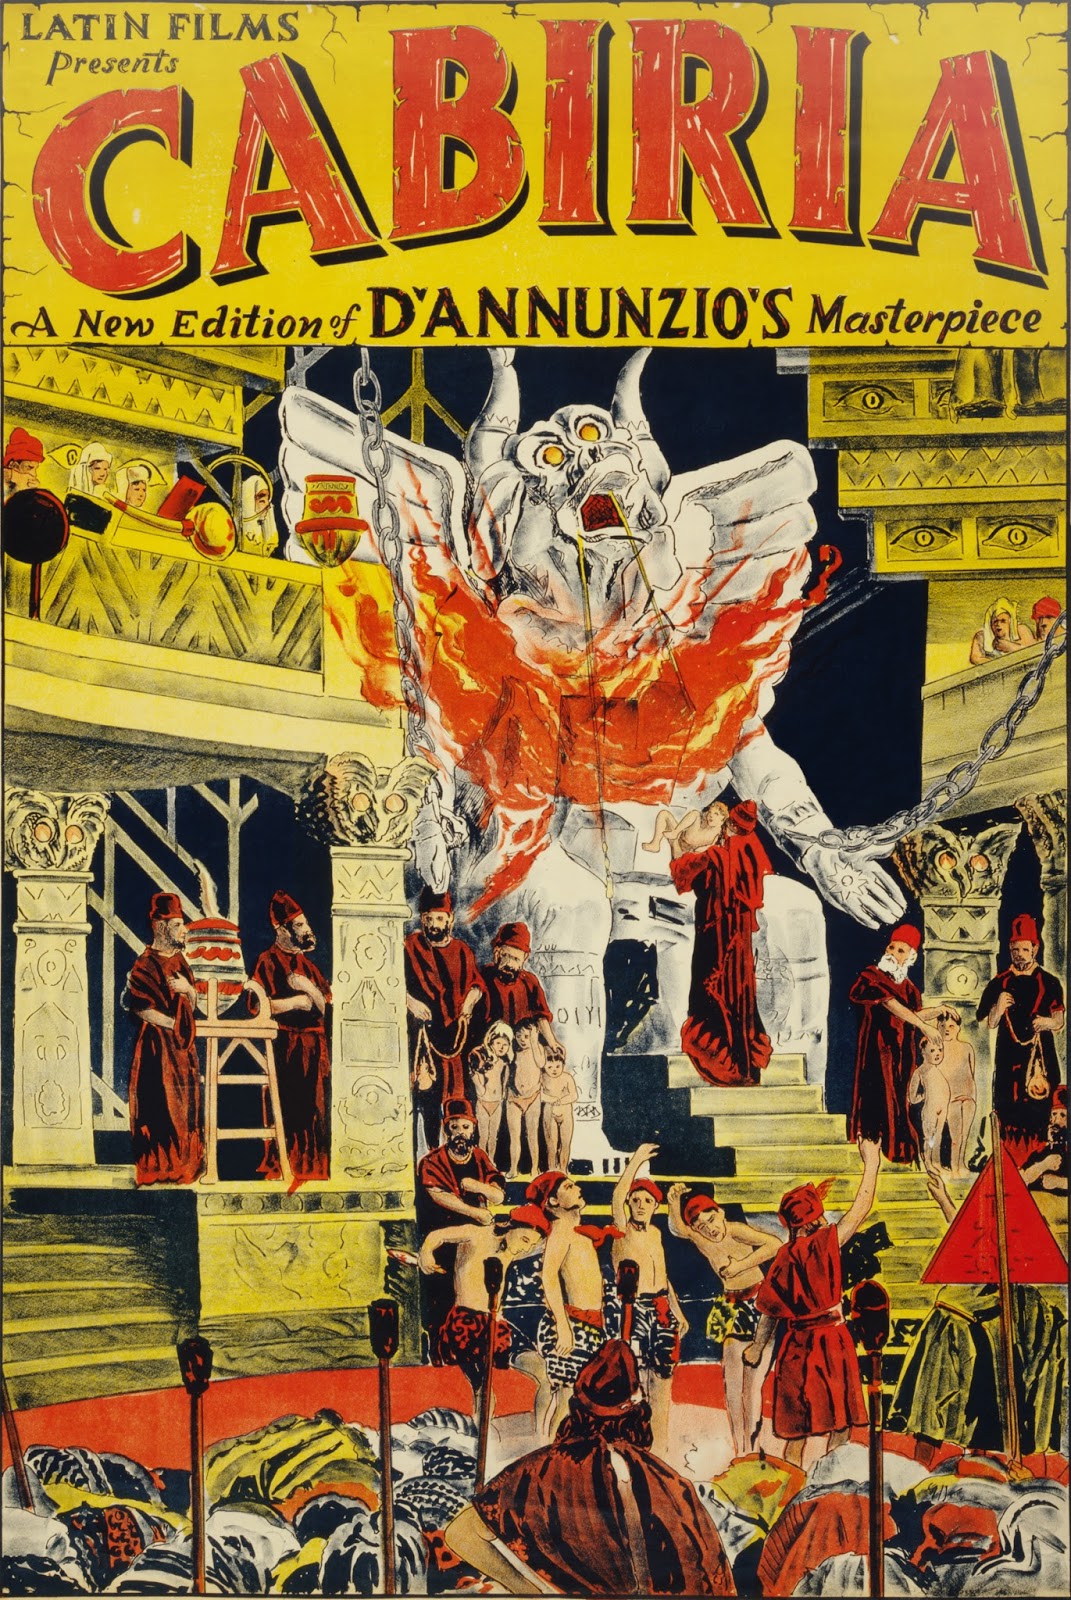 Ver película : Cabiria,1914 - Giovanni Pastrone